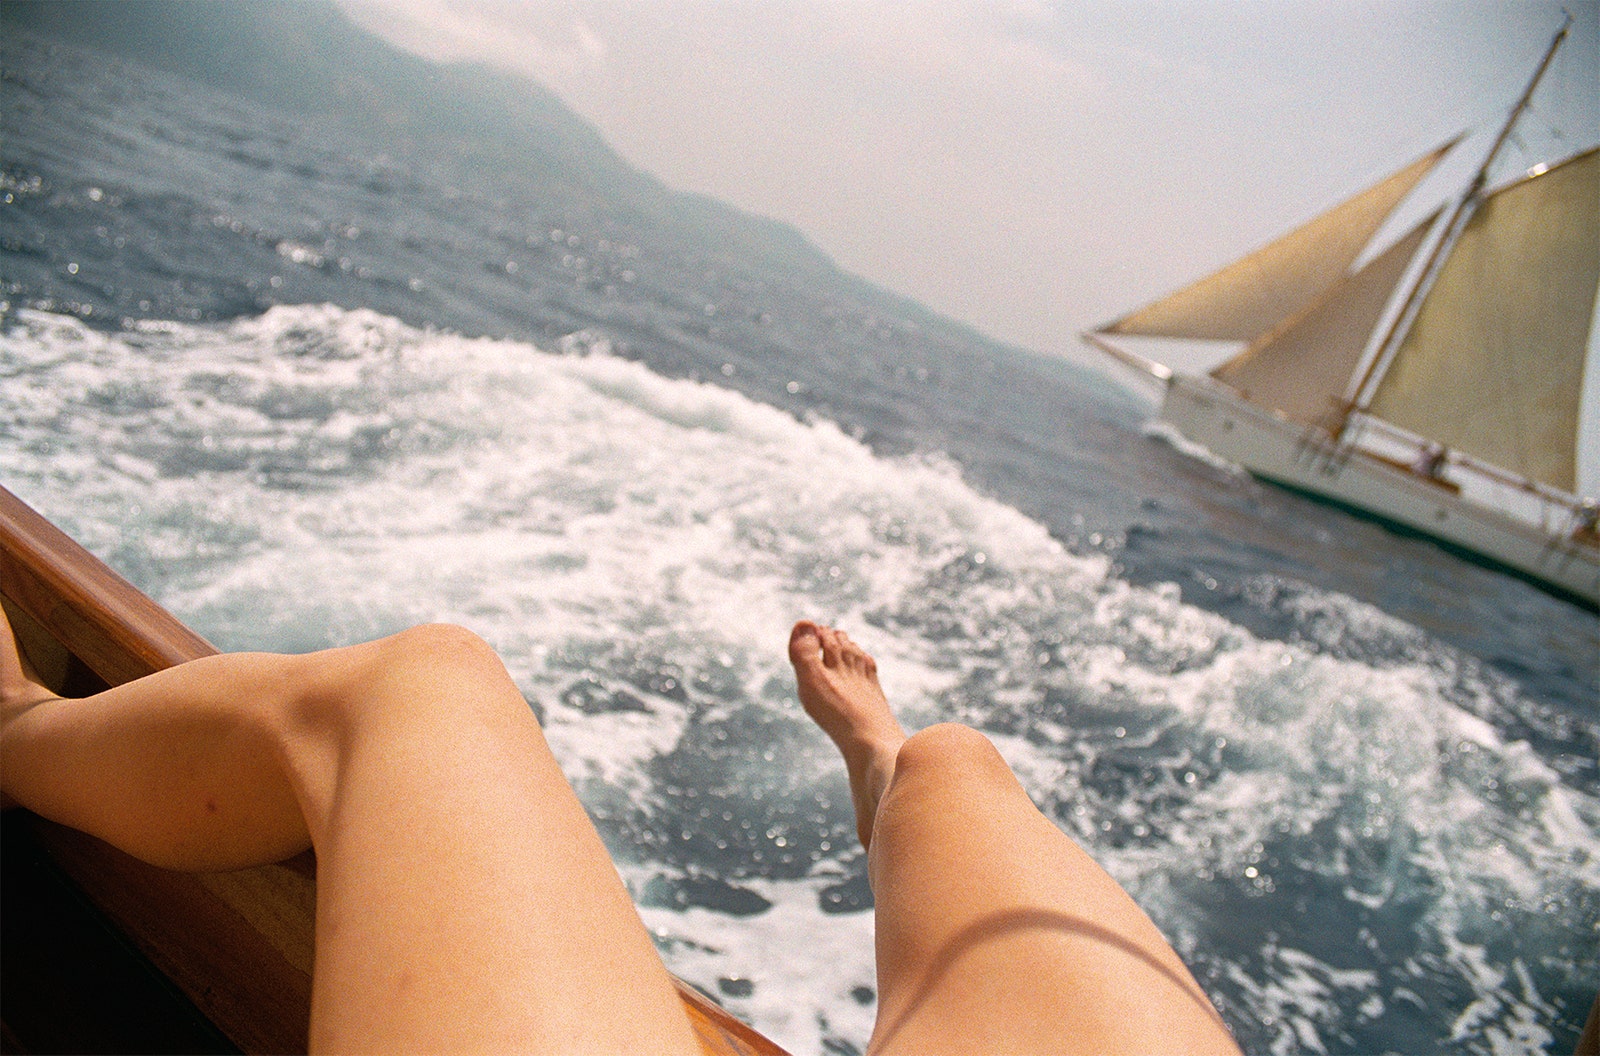 Coco Capitn. Edge of the Boat Mallorca 2013